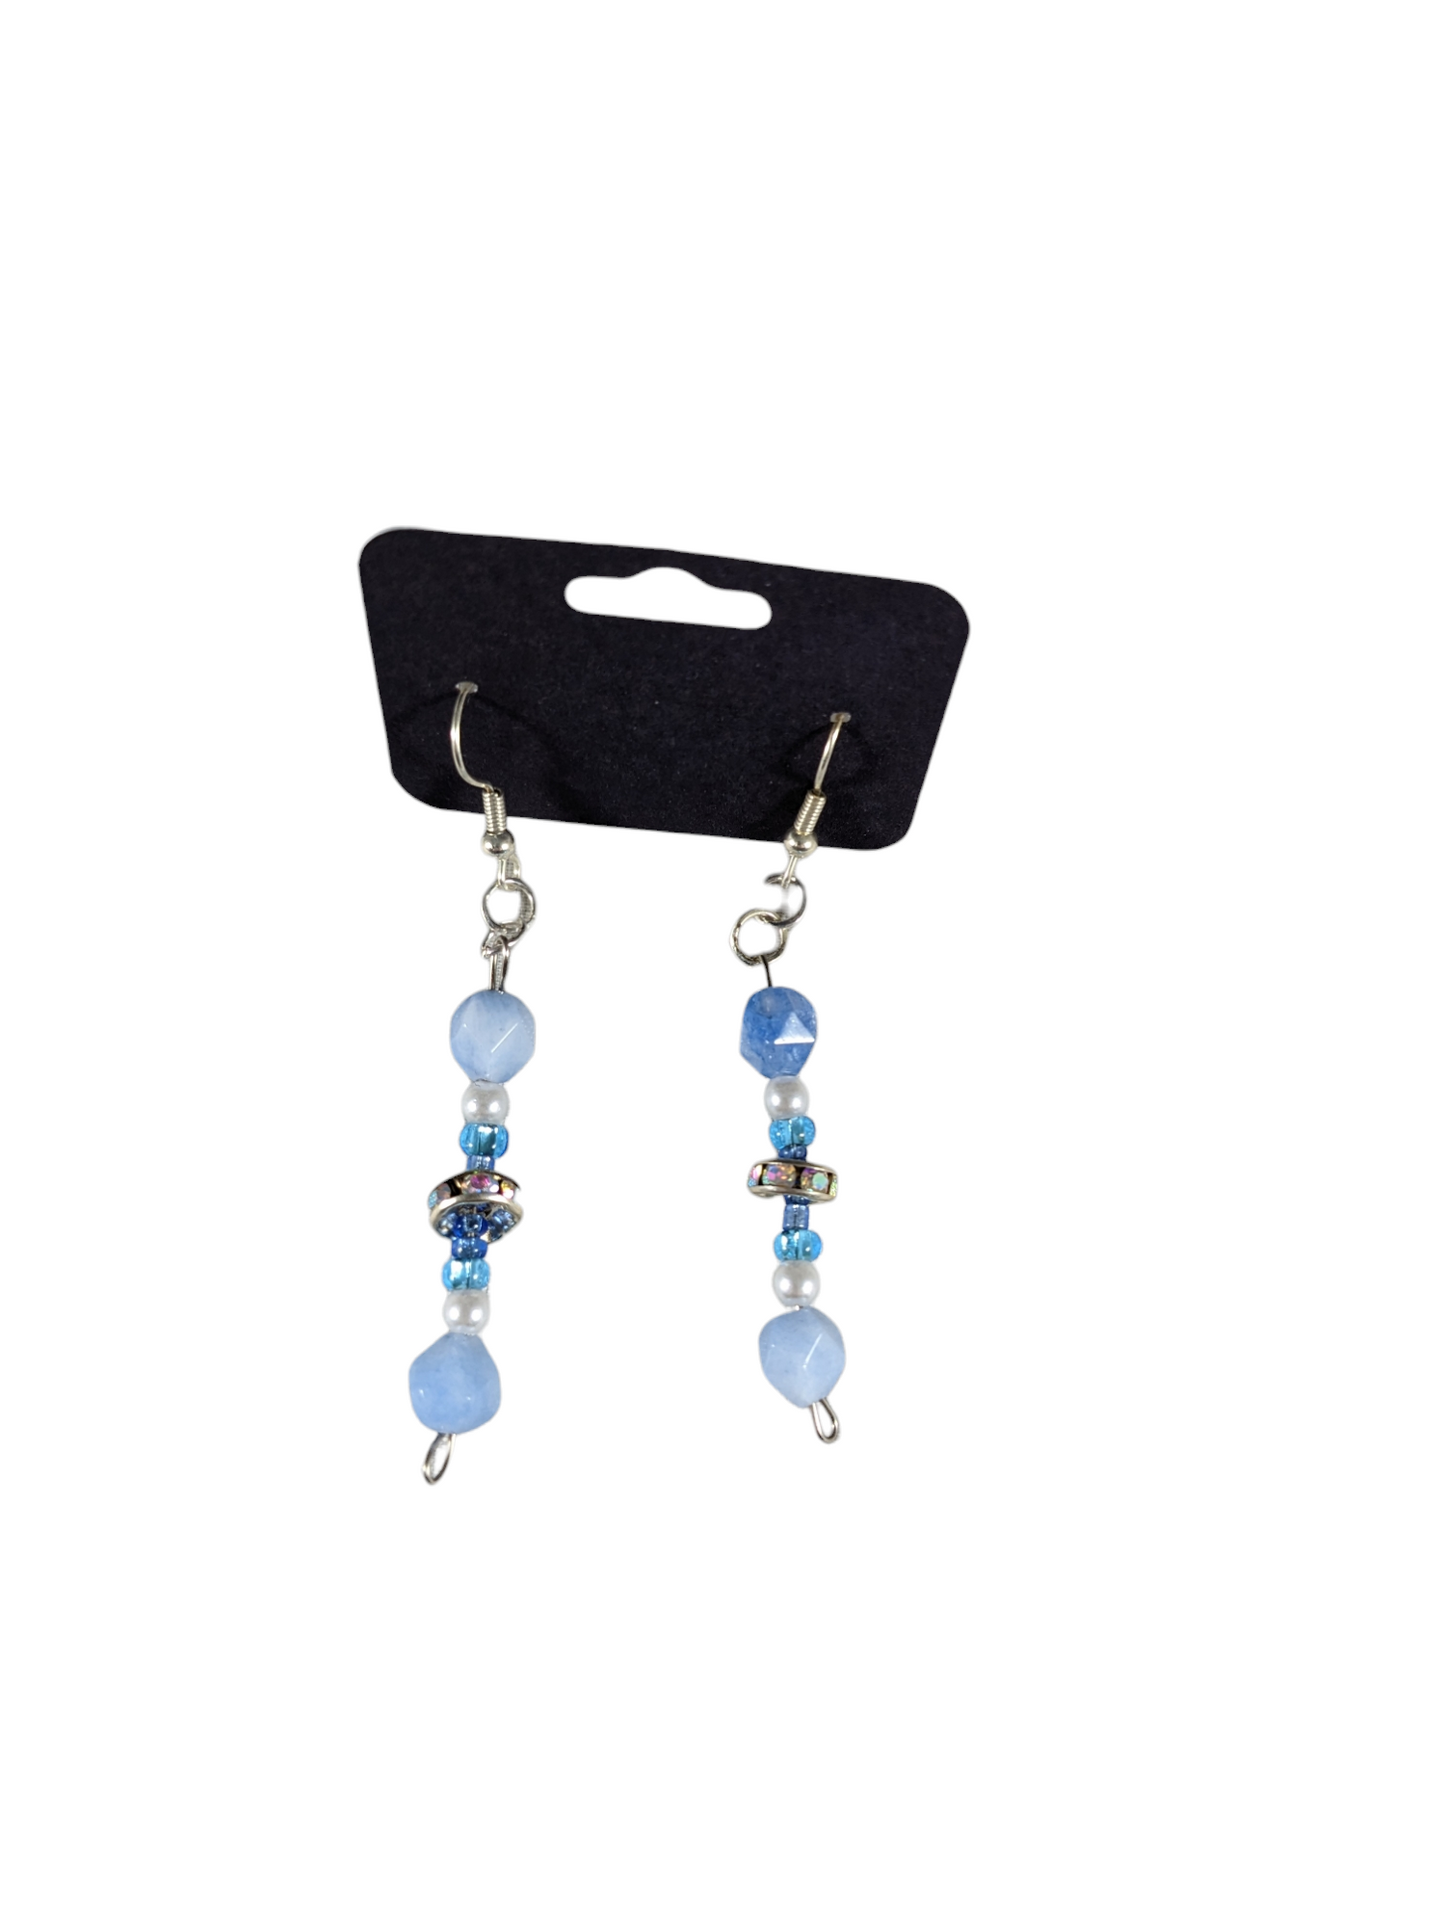 Blue earrings by Lydia